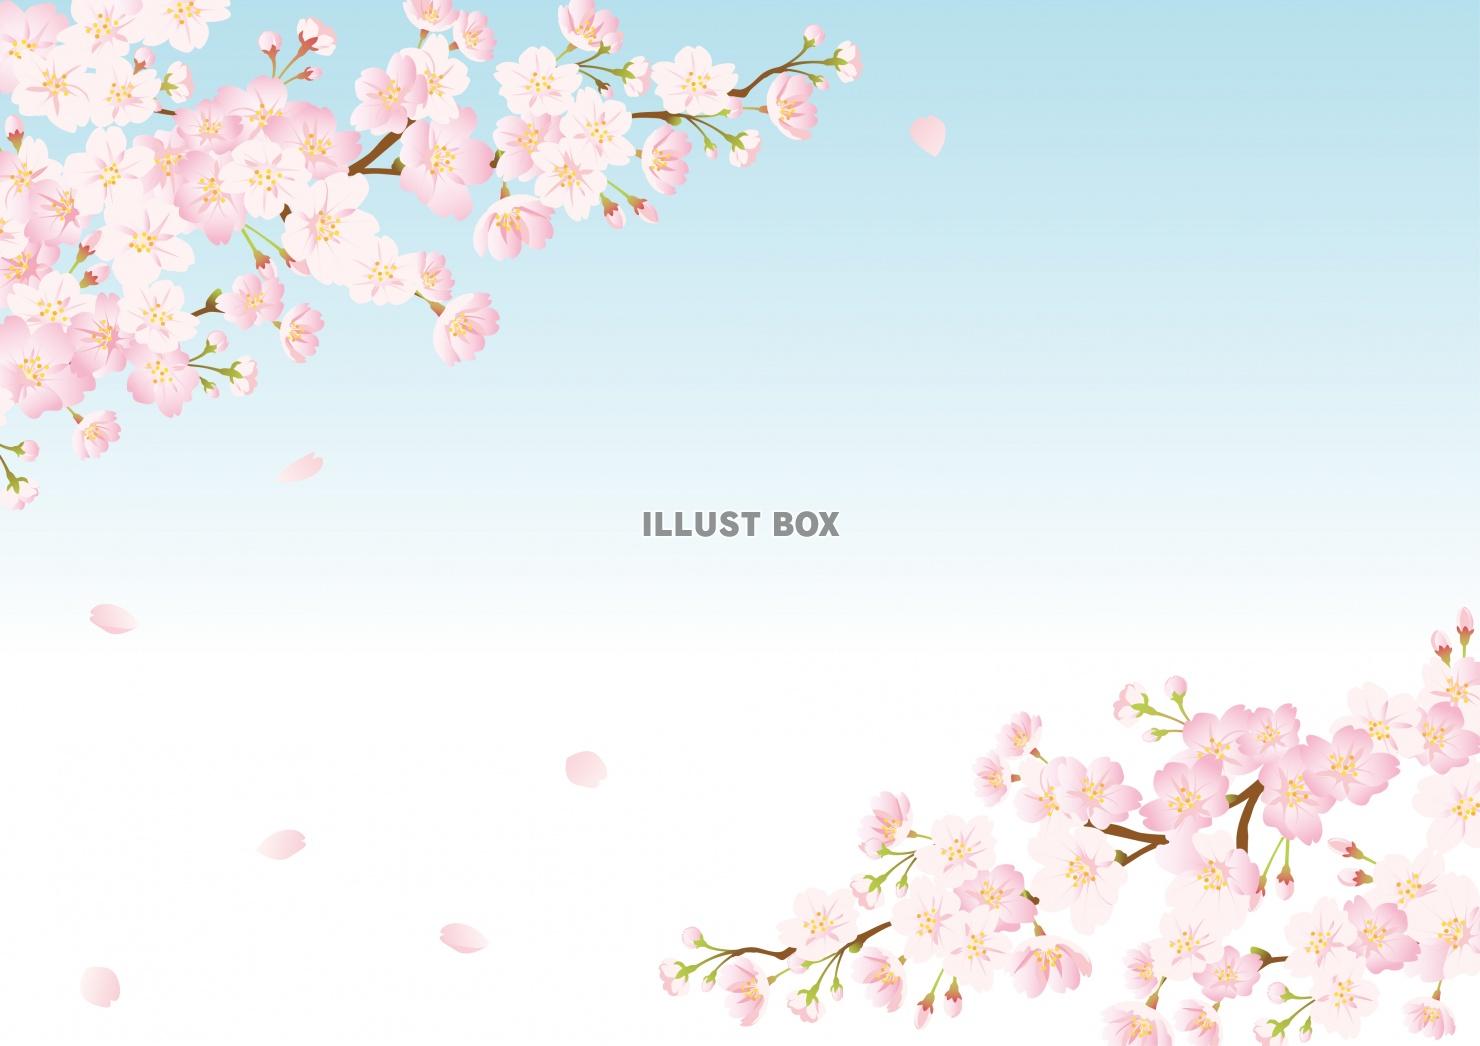 春のイラスト★桜と青空の背景フレーム